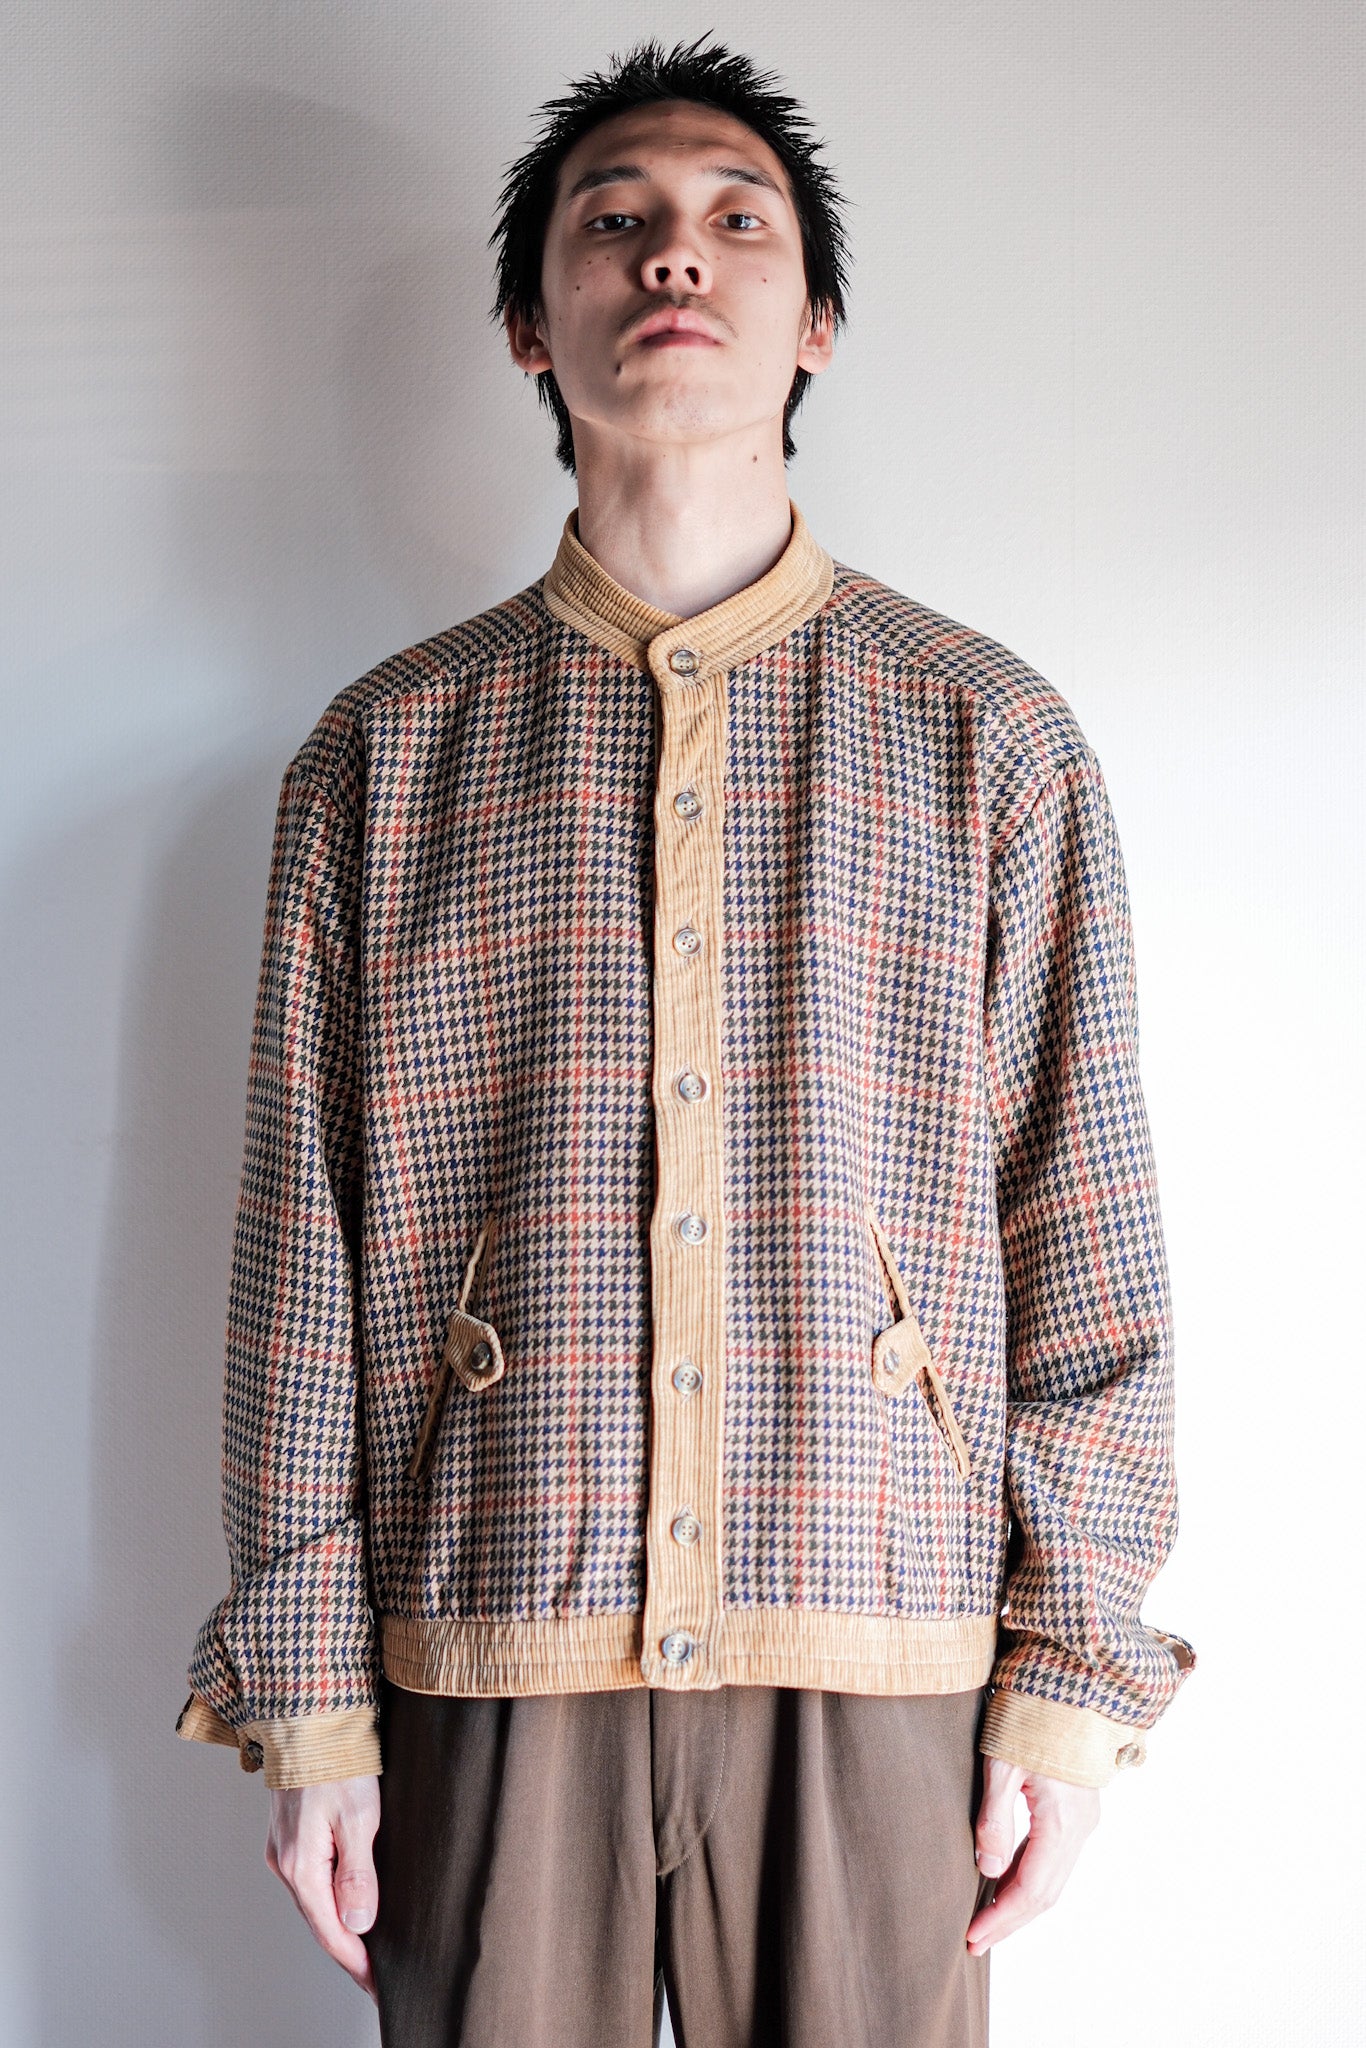 [~ 70 년대] 영국의 빈티지 하운드스투 울 믹스 재킷 크기.